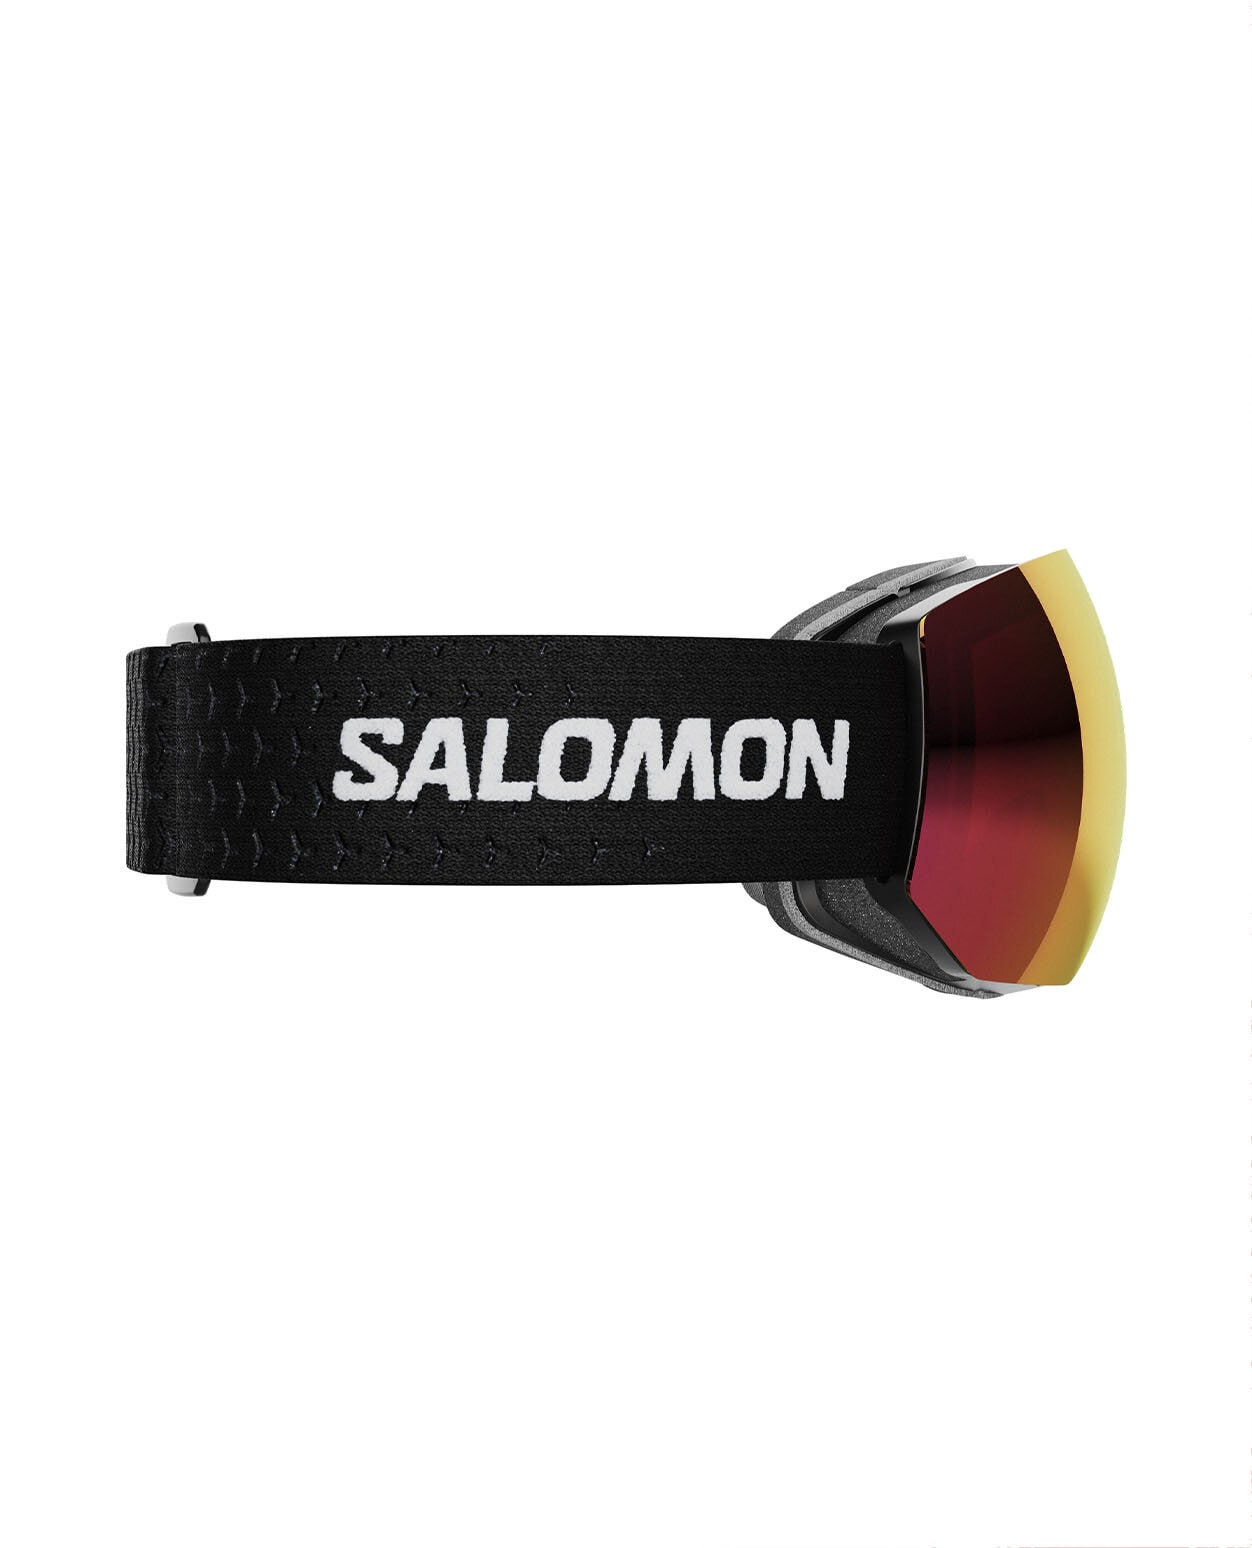 Salomon Radium Pro Sigma Black/Univ PR